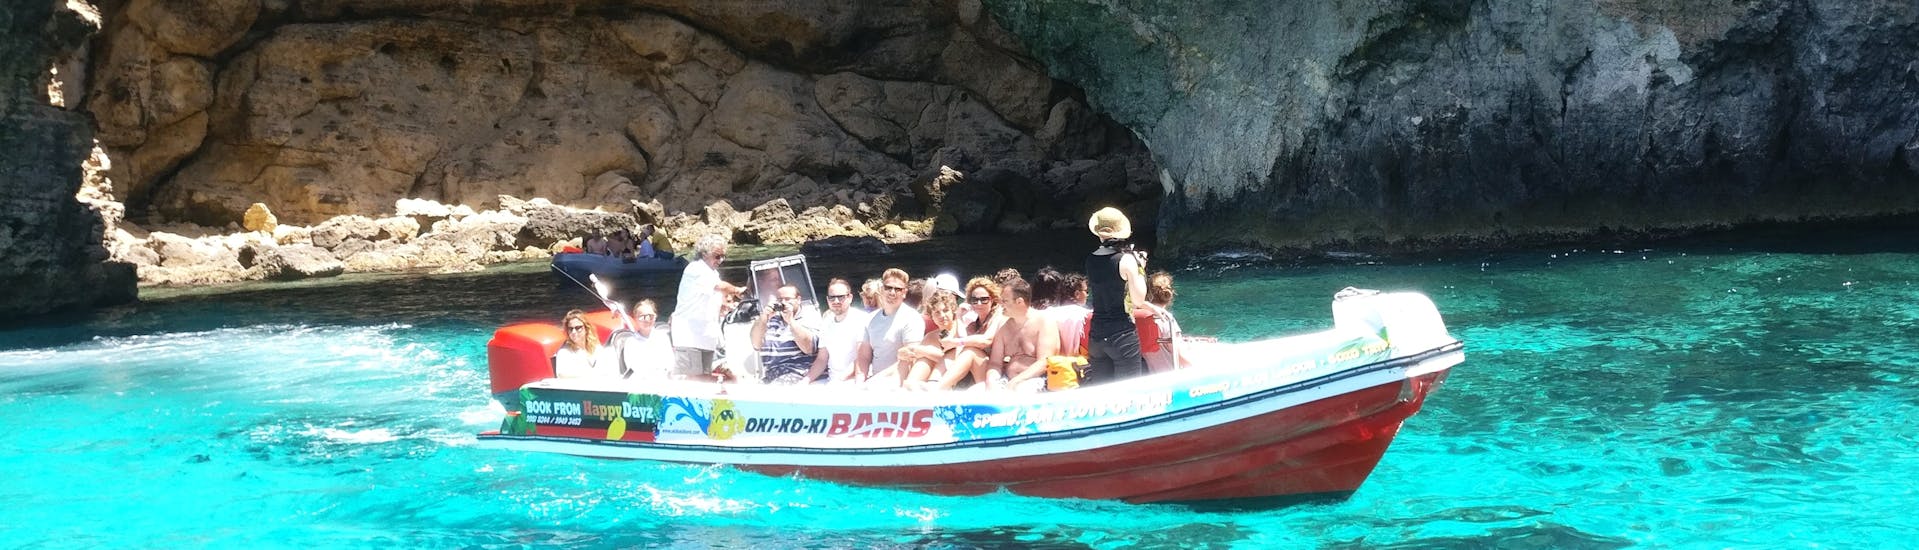 Les passagers profitent du soleil pendant la balade en bateau à moteur vers les grottes de Comino depuis St. Julian's.